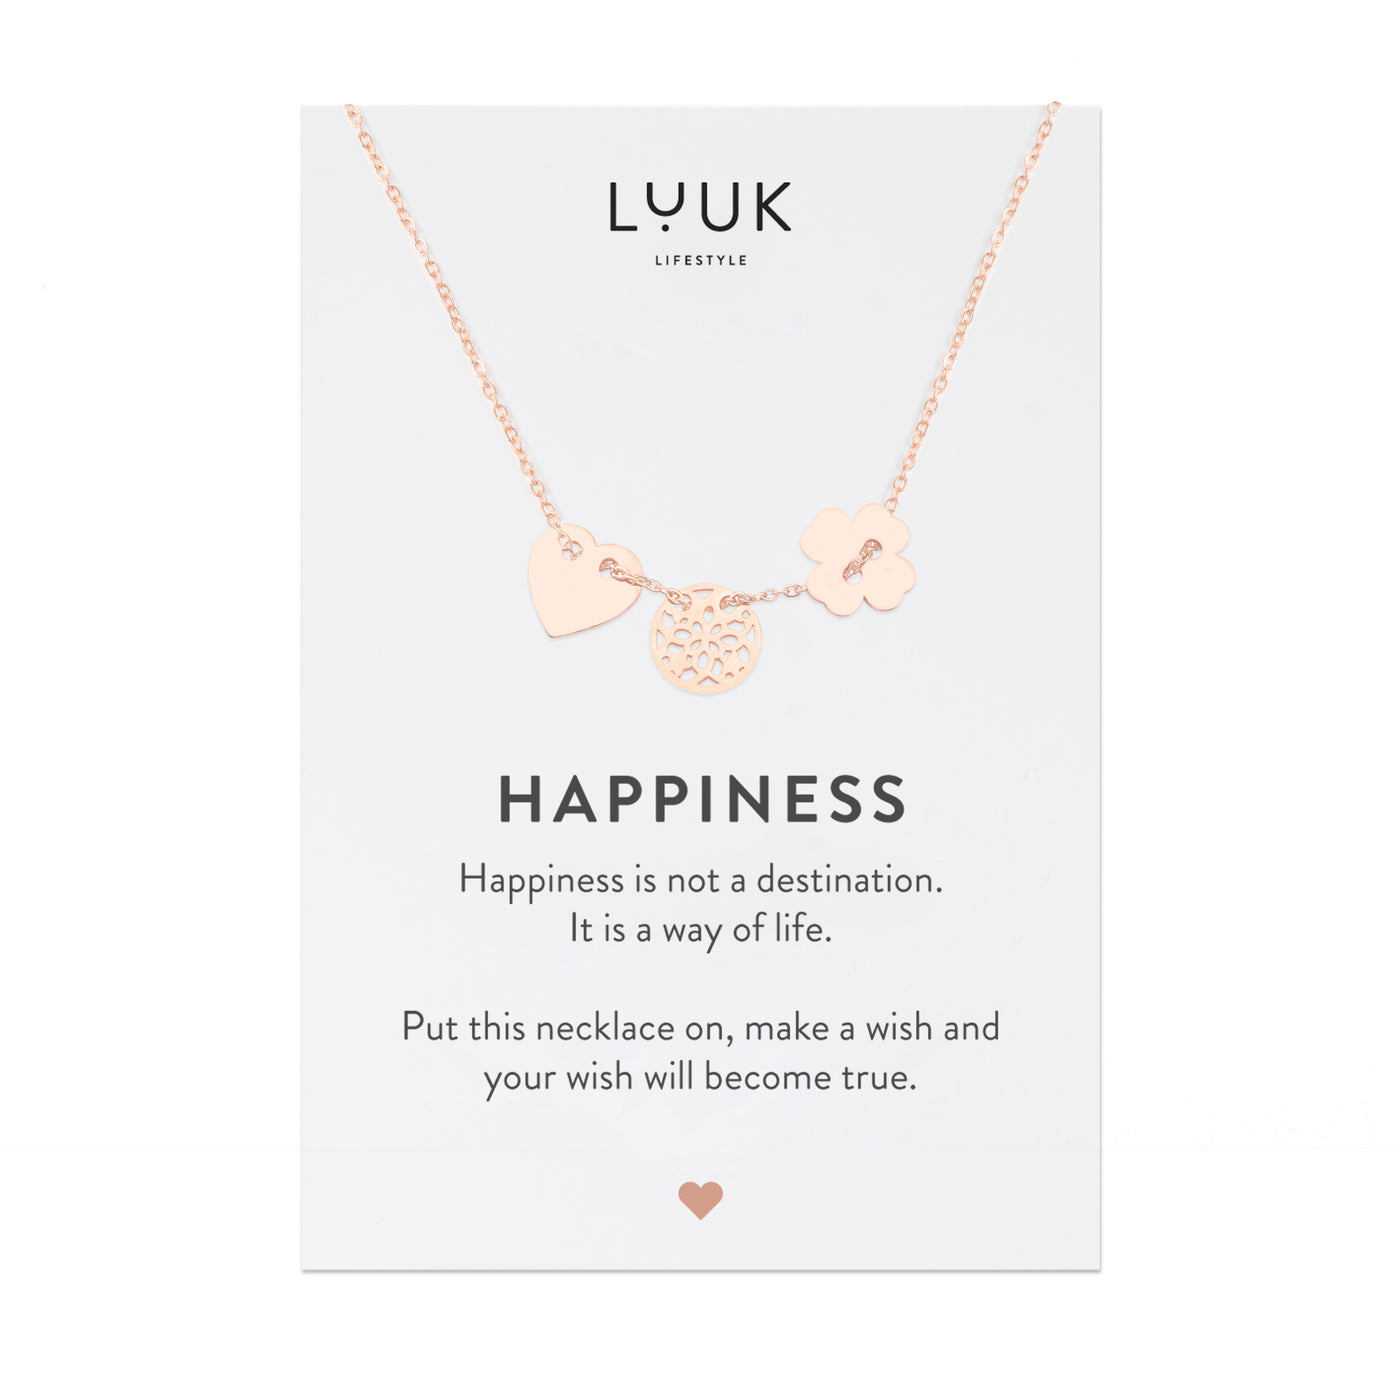 Rosegoldene Halskette mit Glückbringer Anhänger auf Happiness Spruchkarte von Luuk Lifestyle